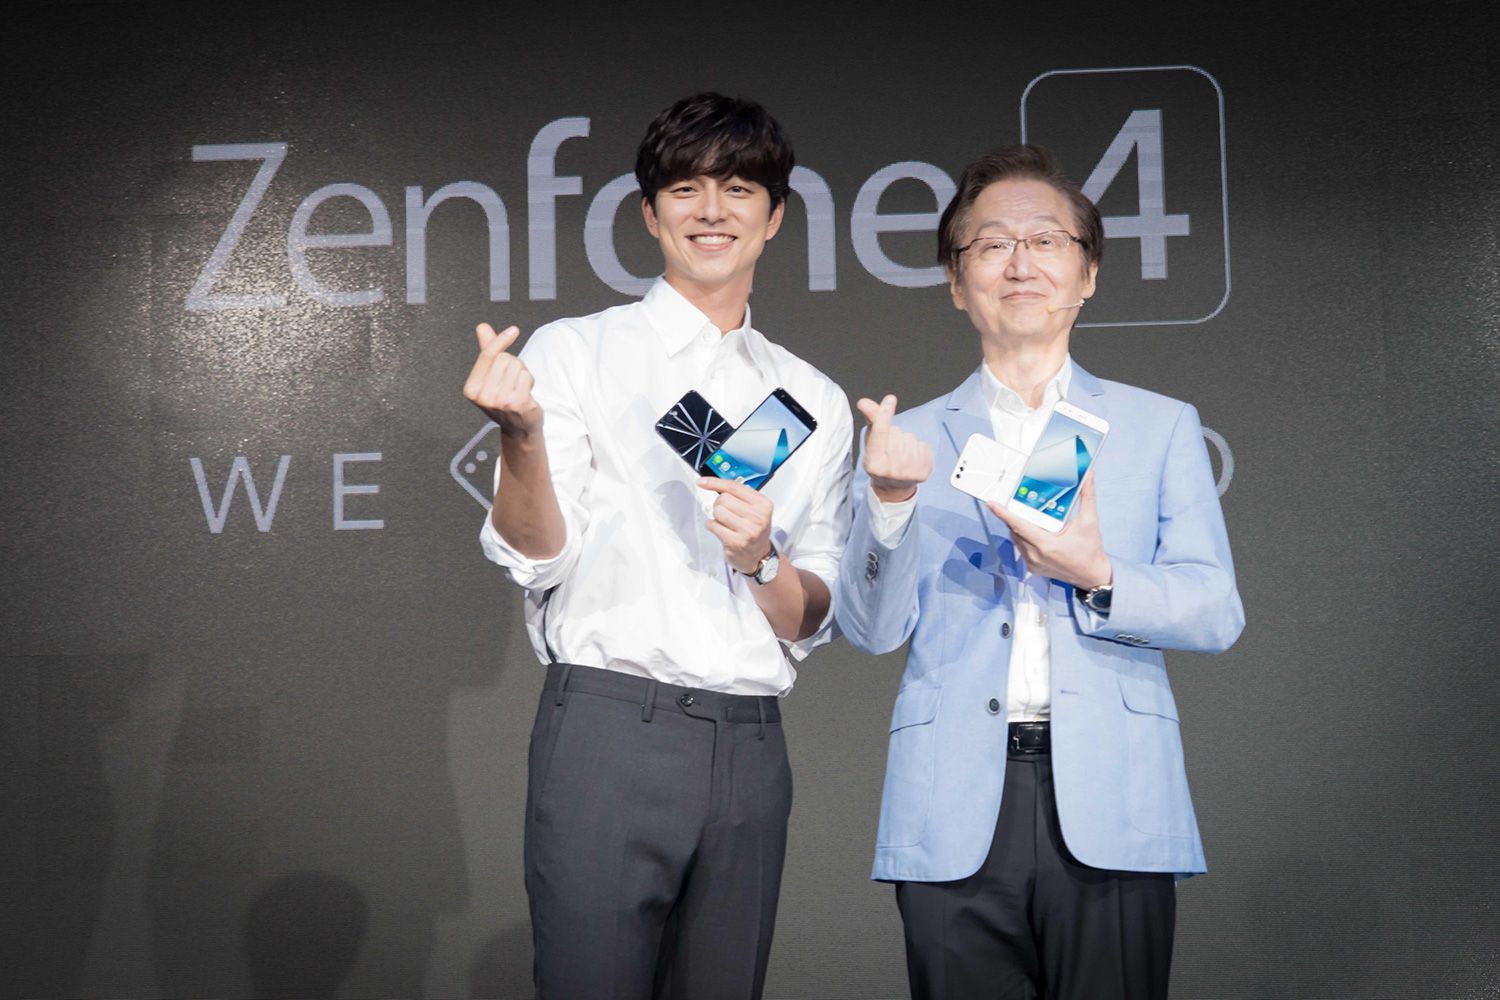 ASUS ZenFone 4 Series Launch